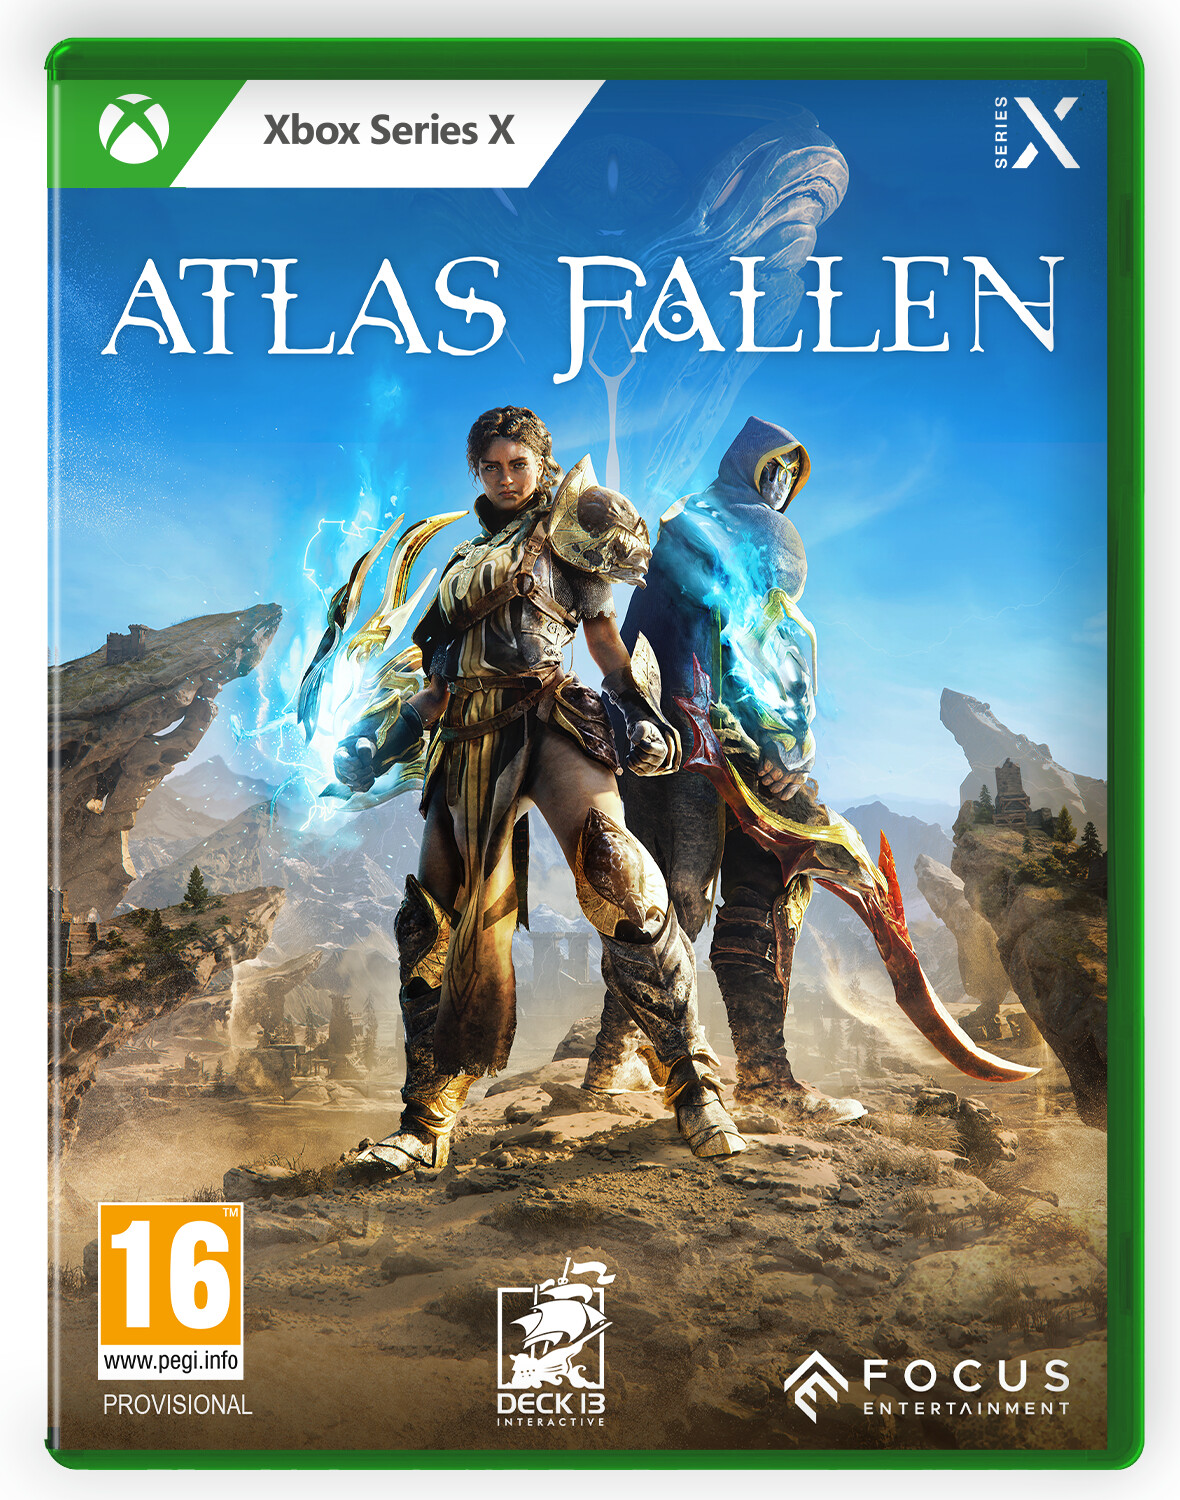 Photos - Game Focus Entertainment Atlas Fallen (Xbox Series X)